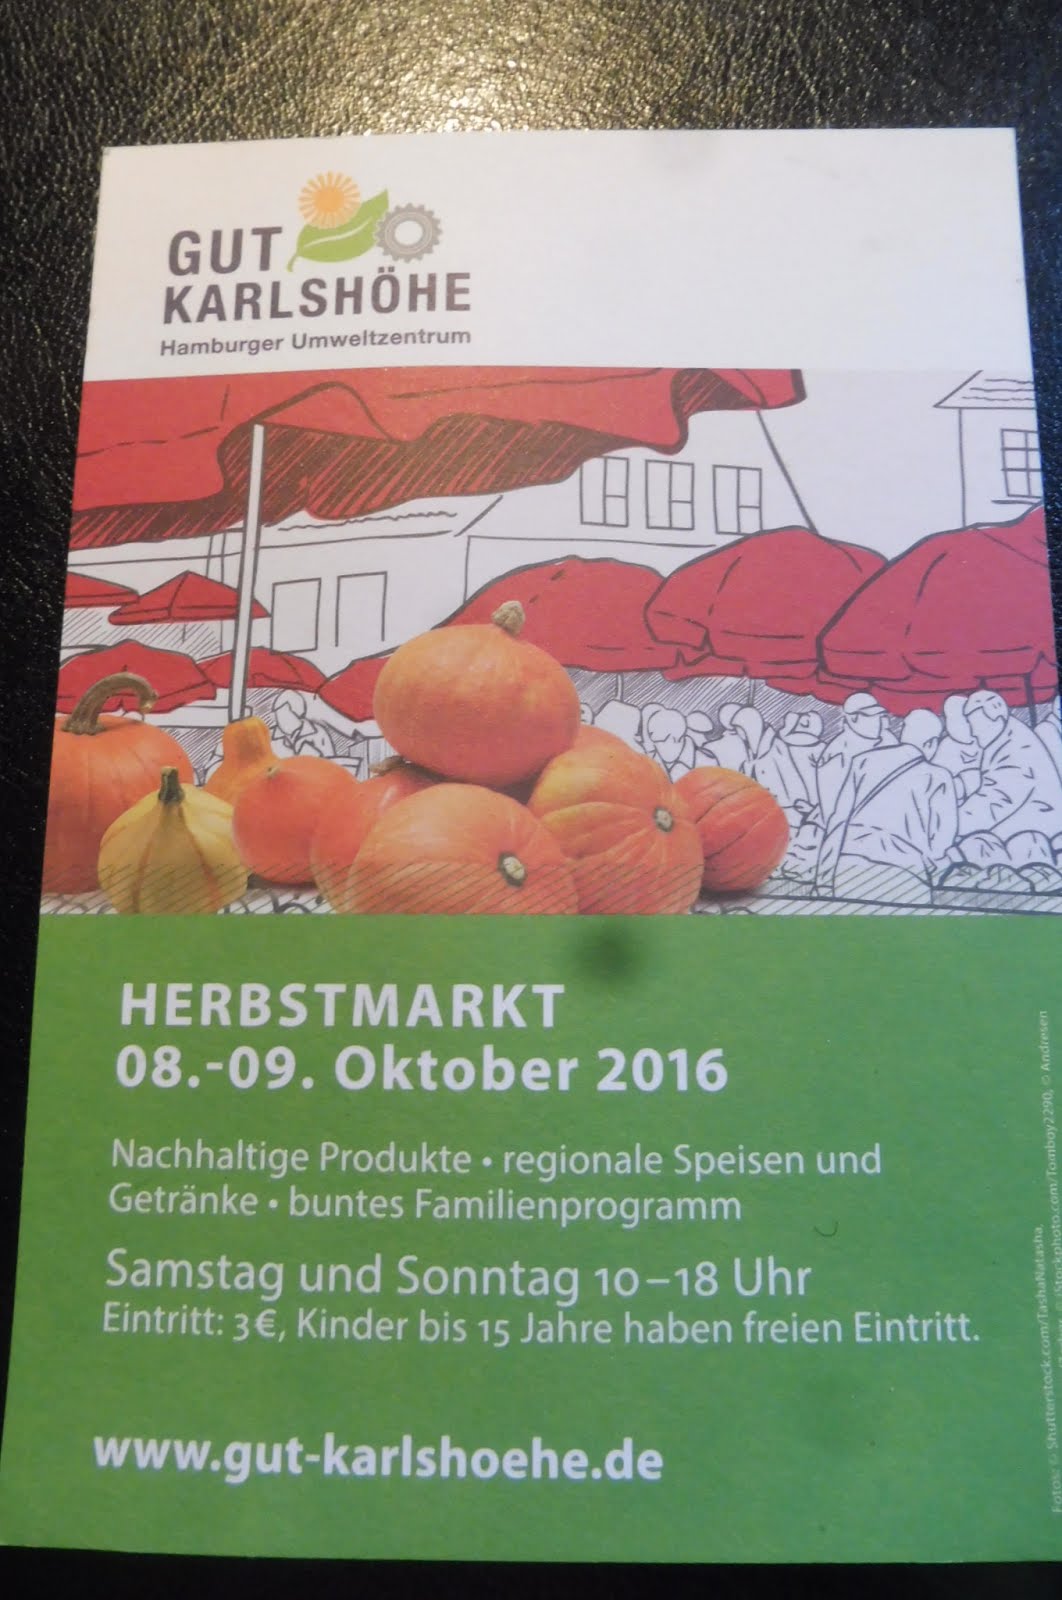 Herbstmarkt auf der Karlshöhe